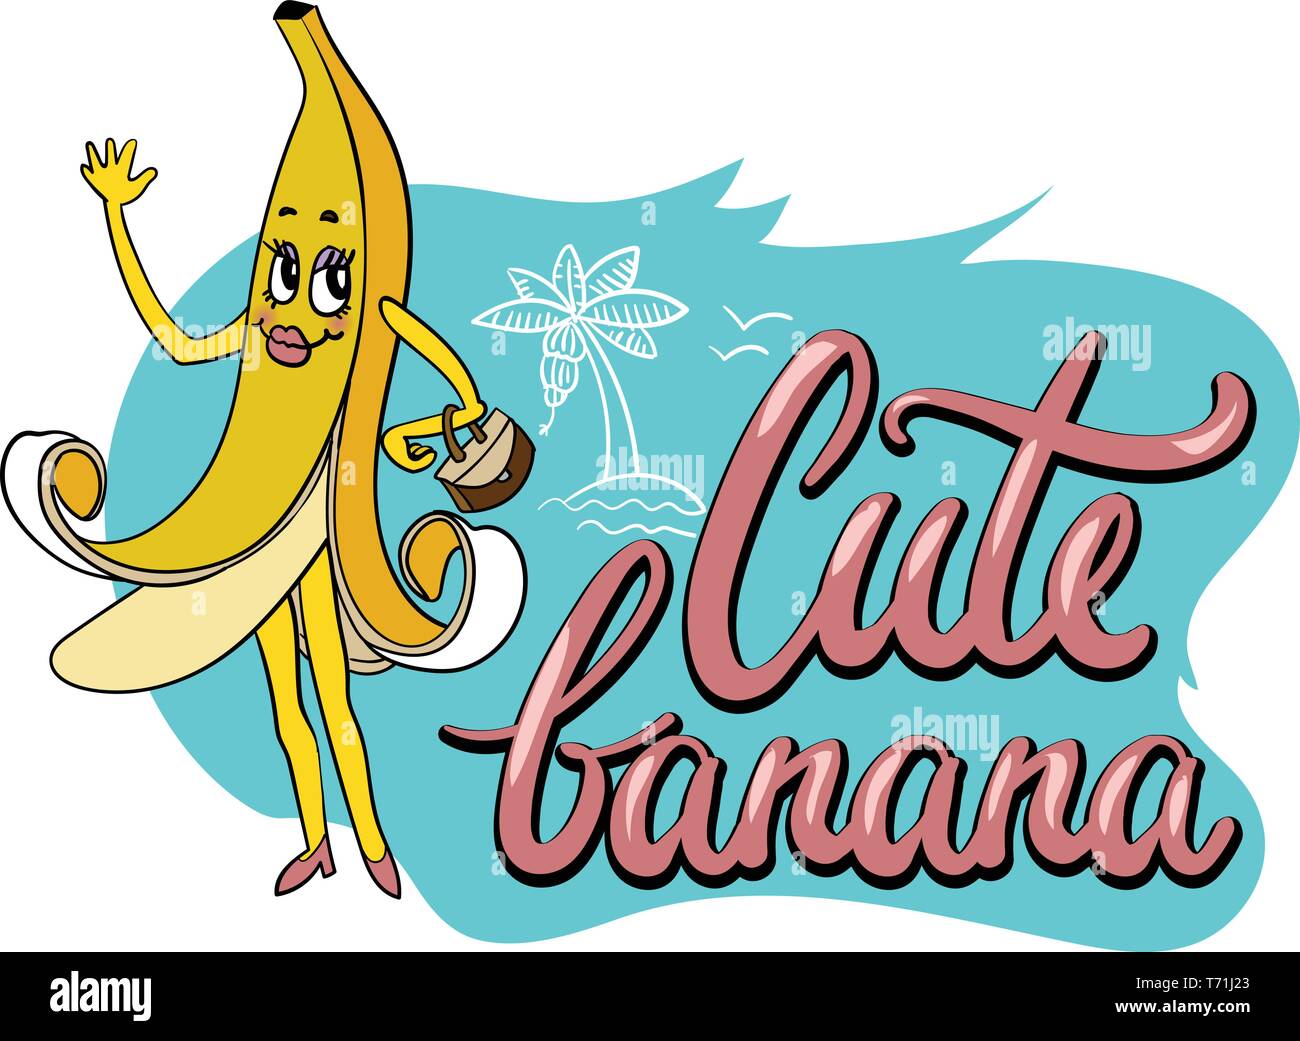 Cute inusual dibujados a mano para impresión textil con gracioso personaje de dibujos animados de la banana y nota manuscrita Ilustración del Vector